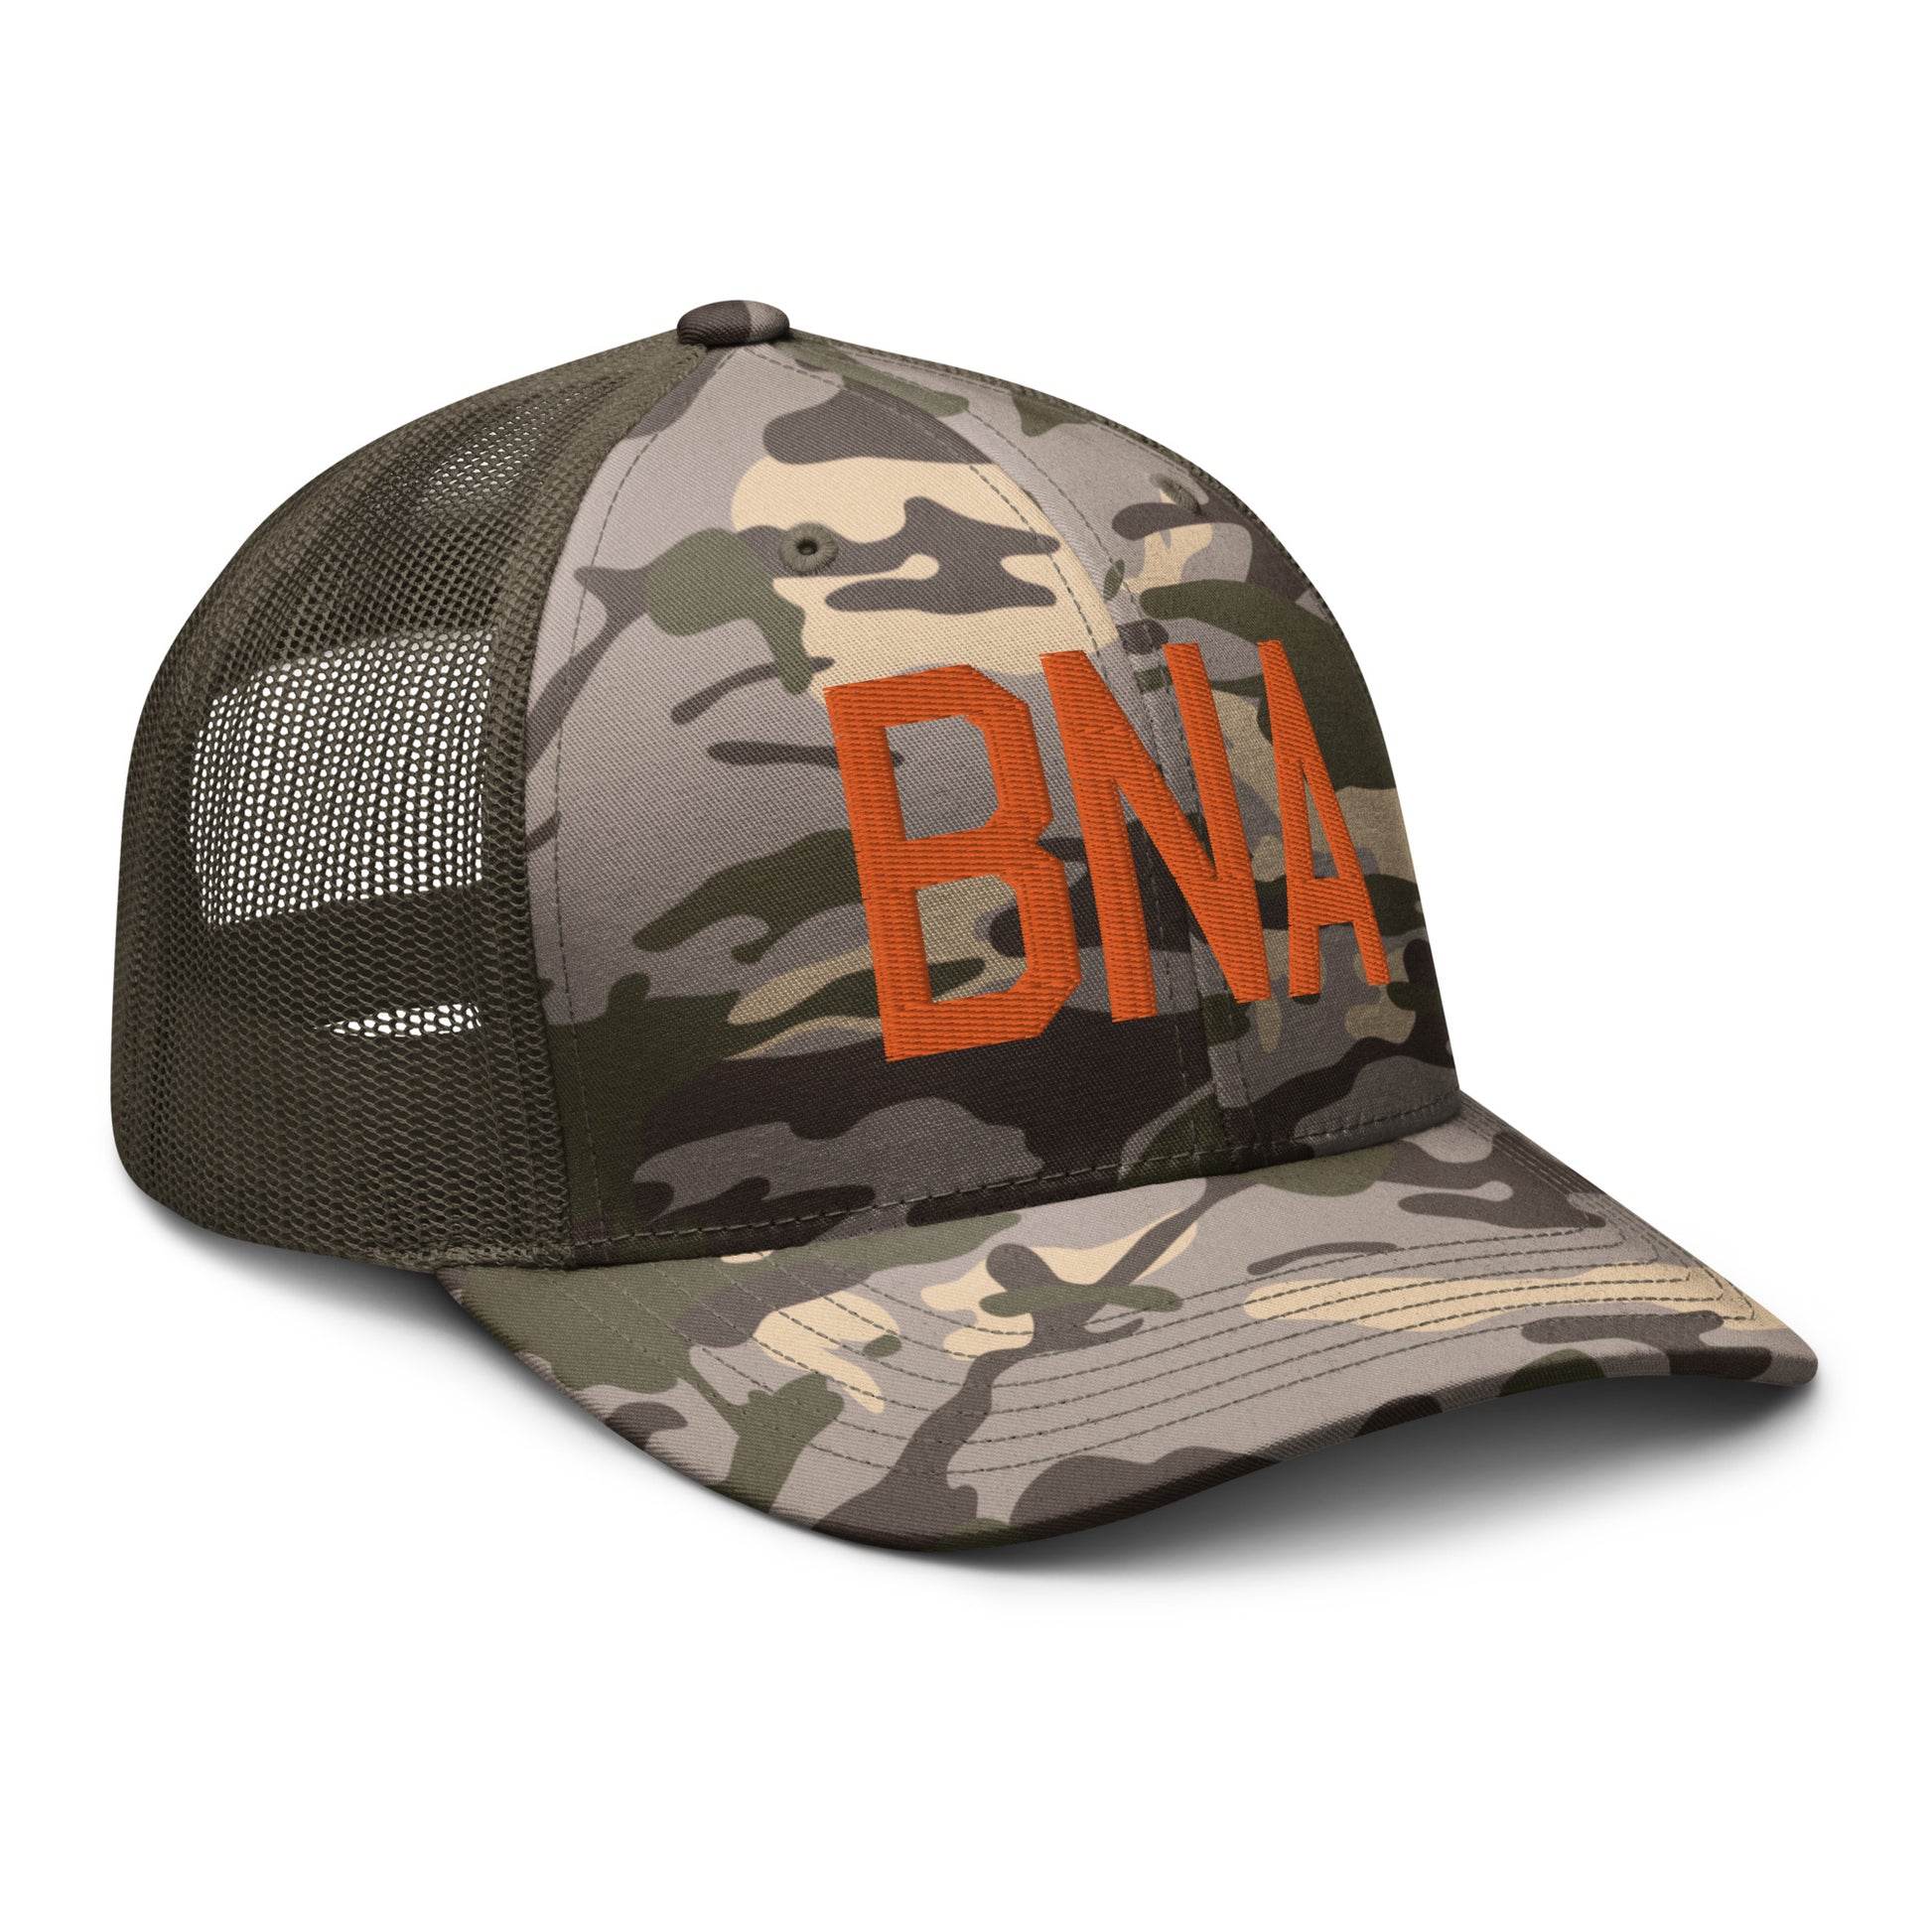 Airport Code Camouflage Trucker Hat - Orange • BNA Nashville • YHM Designs - Image 20